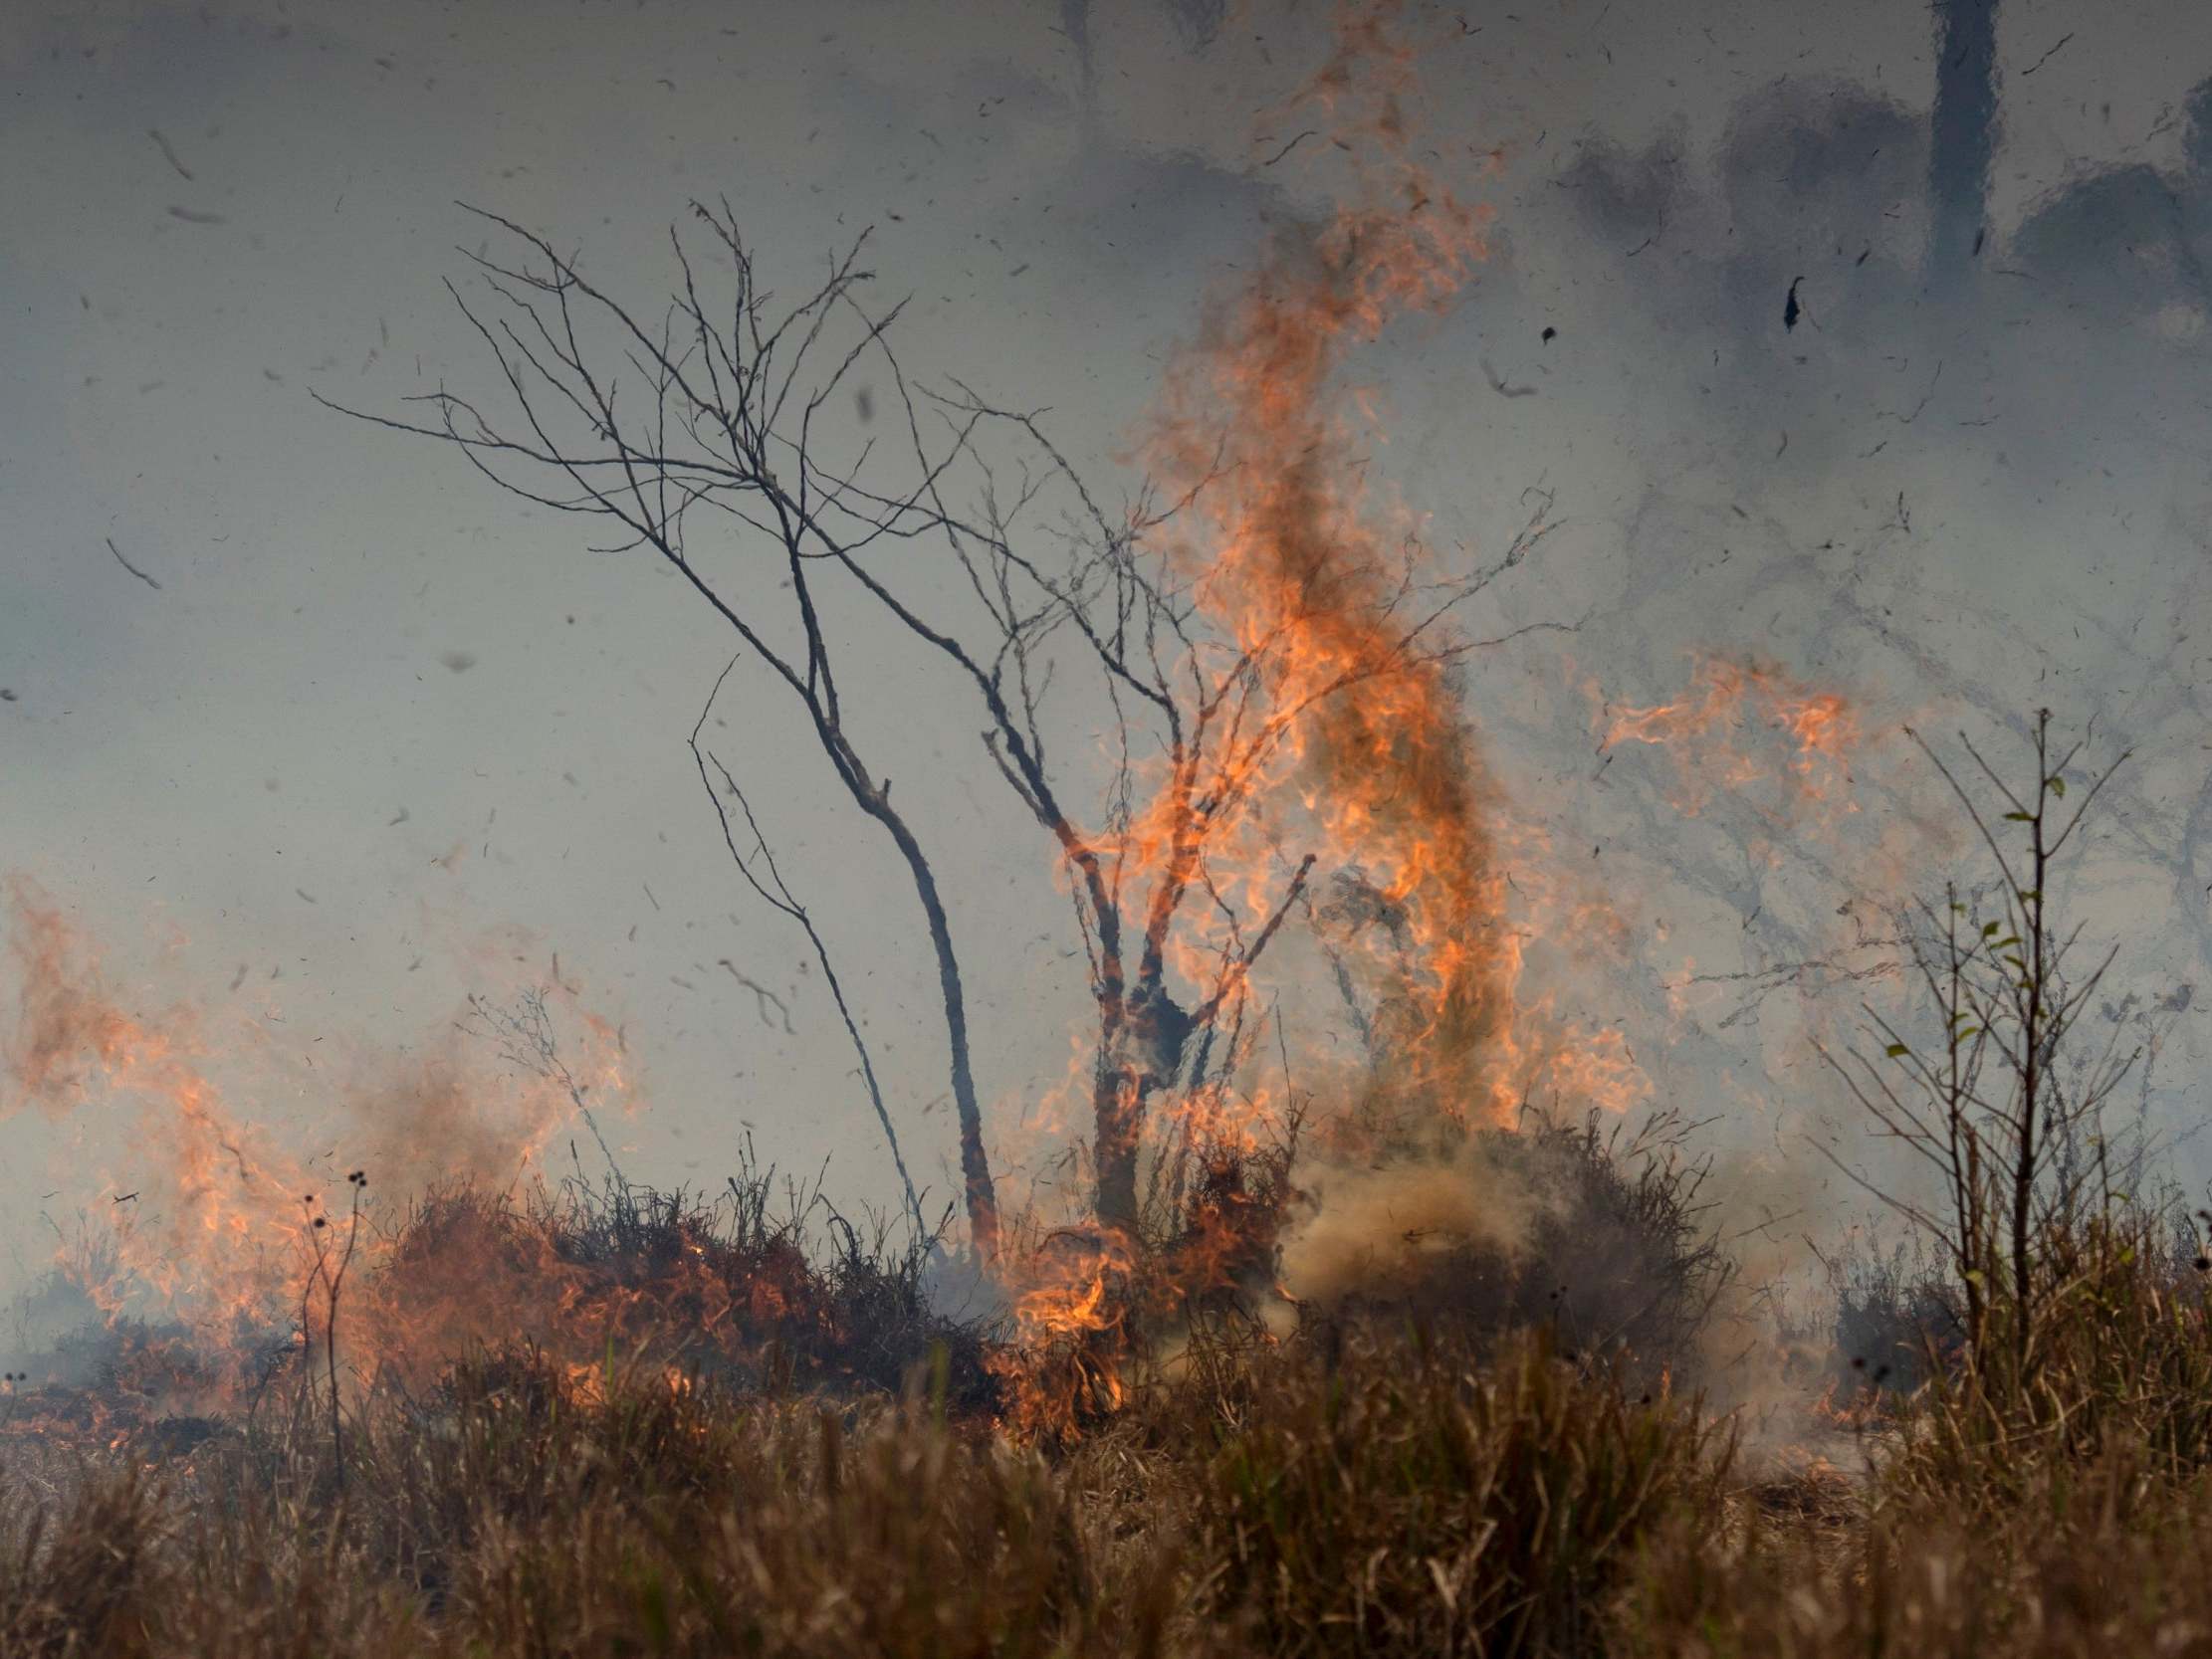 Fire consumes brush at the Nova Fronteira region in Novo Progresso, Brazil